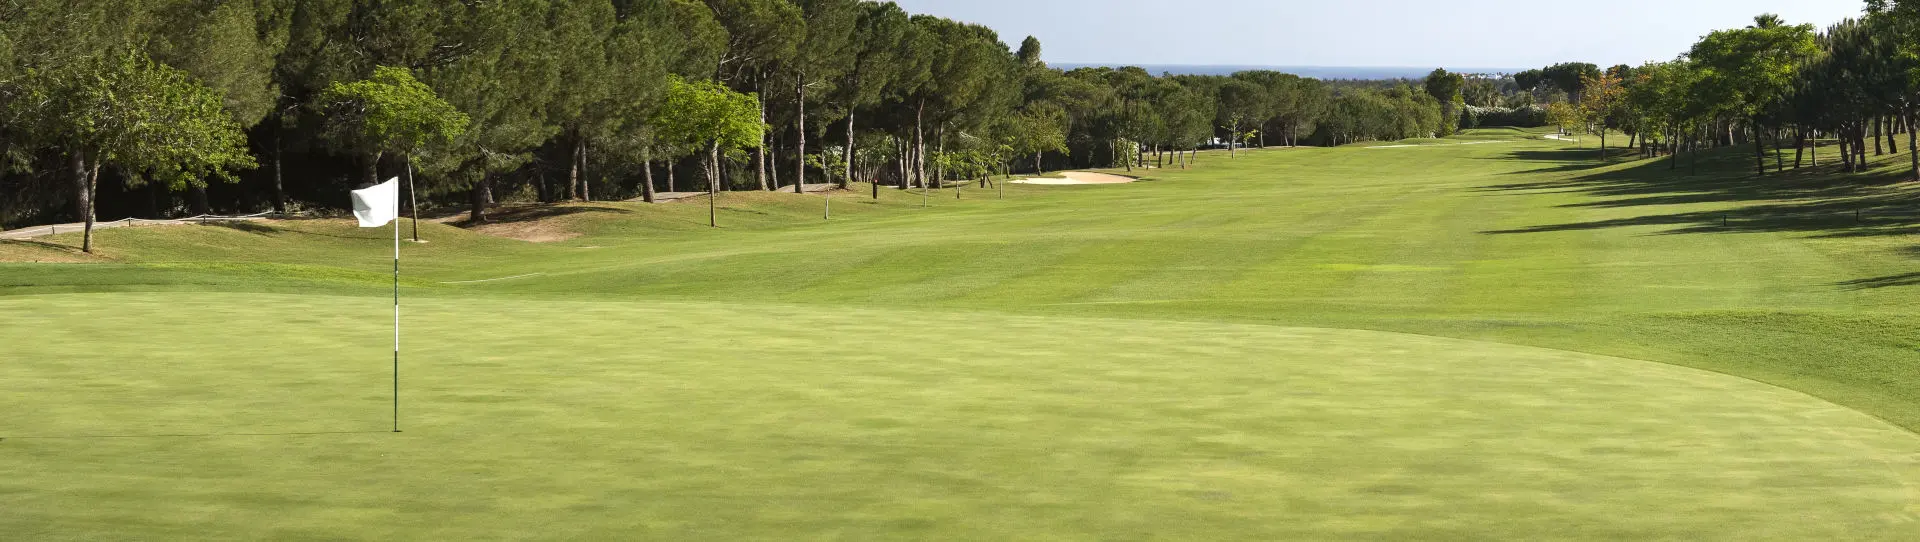 Spain golf courses - La Quinta Golf Course - Photo 1